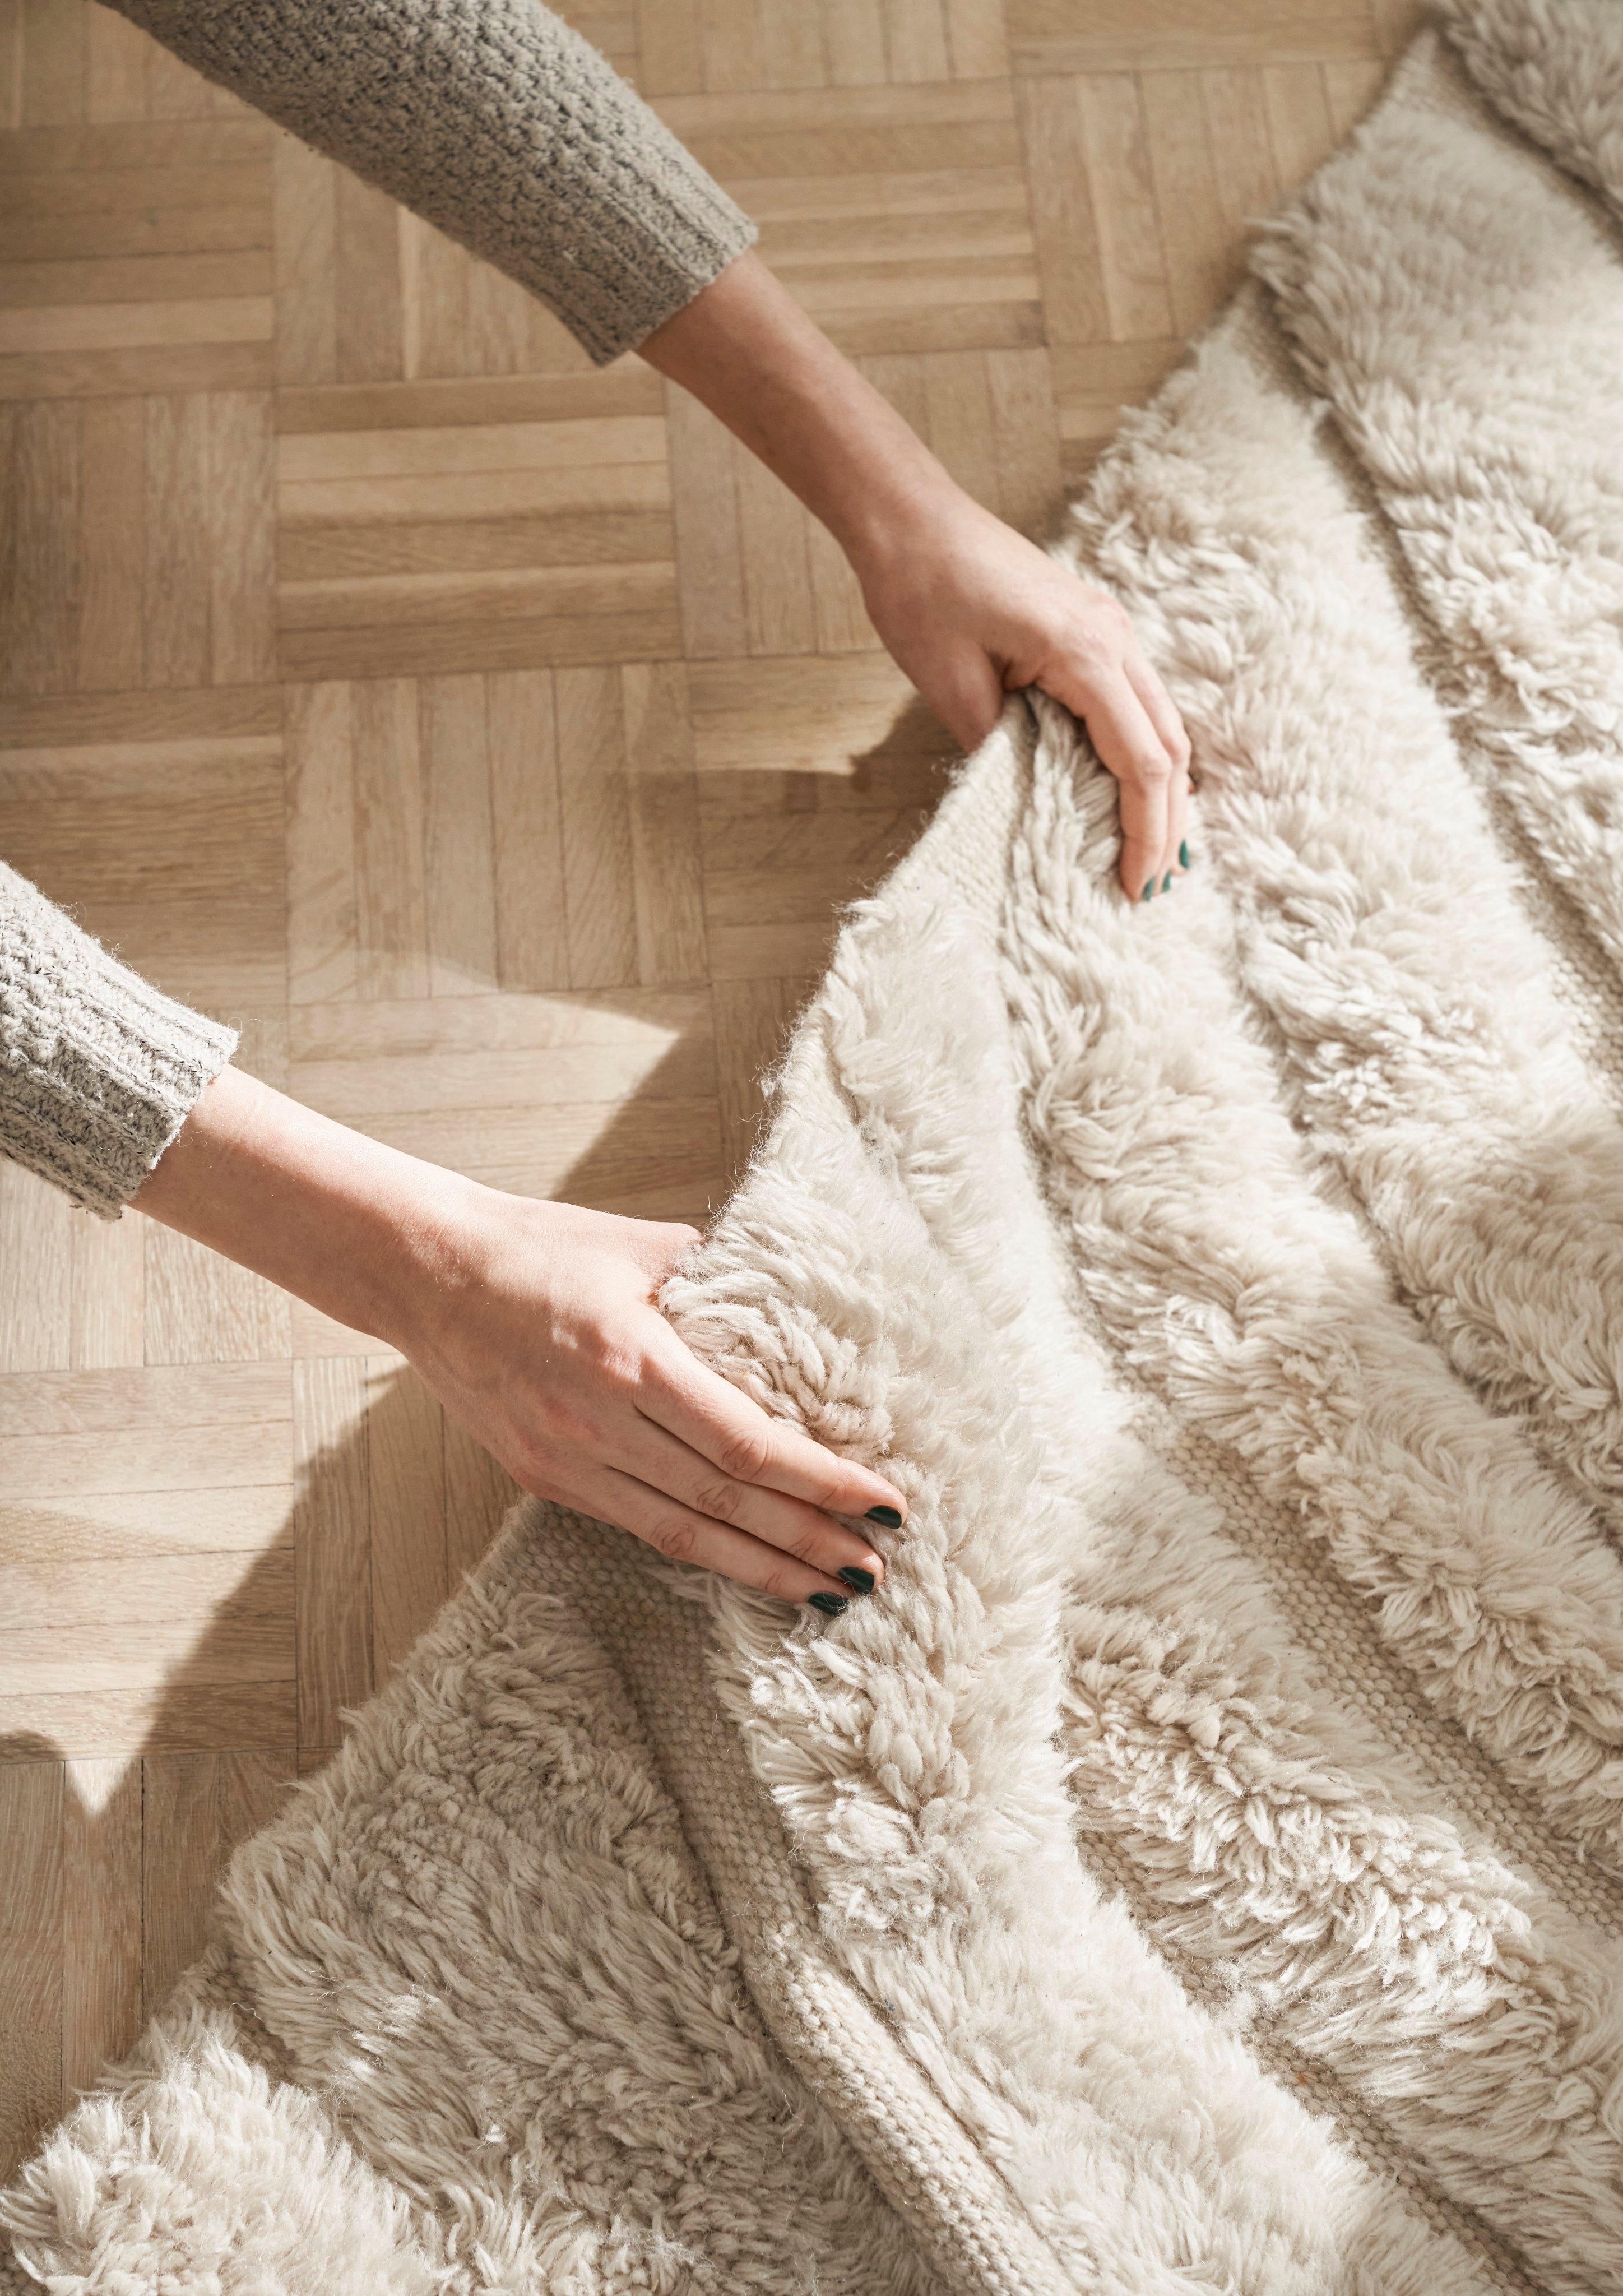 Handen voelen de textuur van het Form karpet.